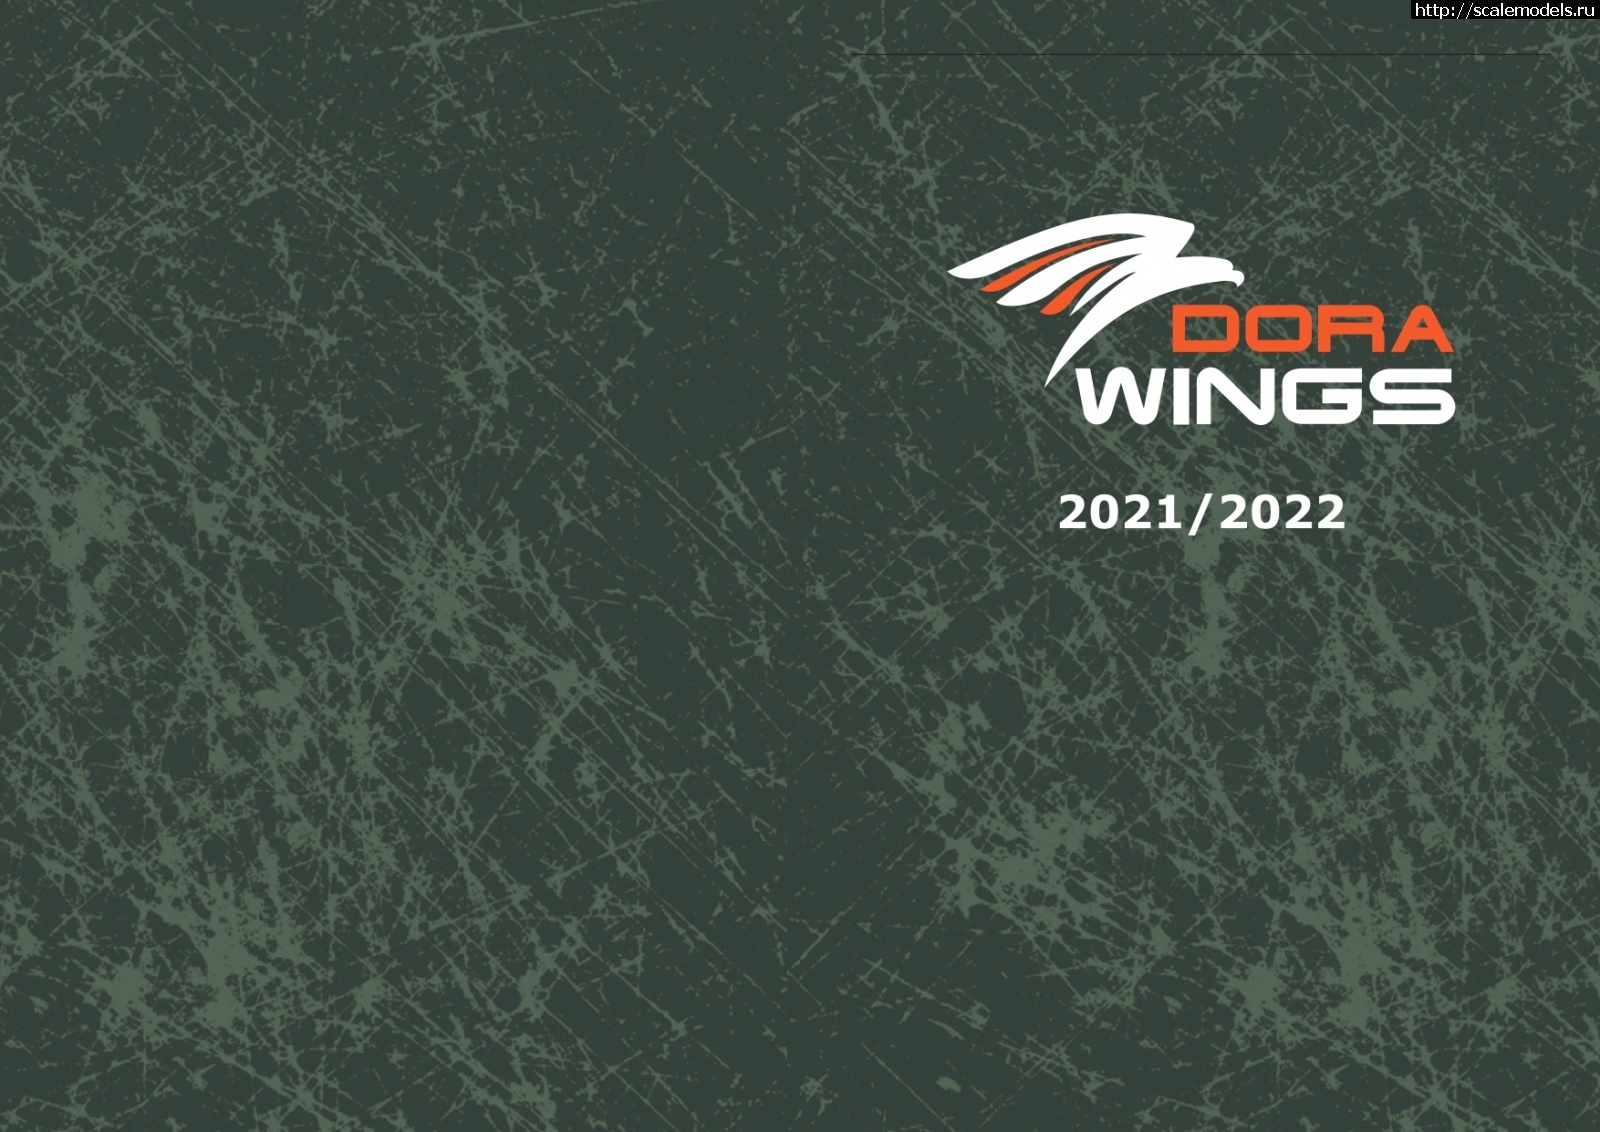 Каталог Dora Wings - 2021/2022 Закрыть окно